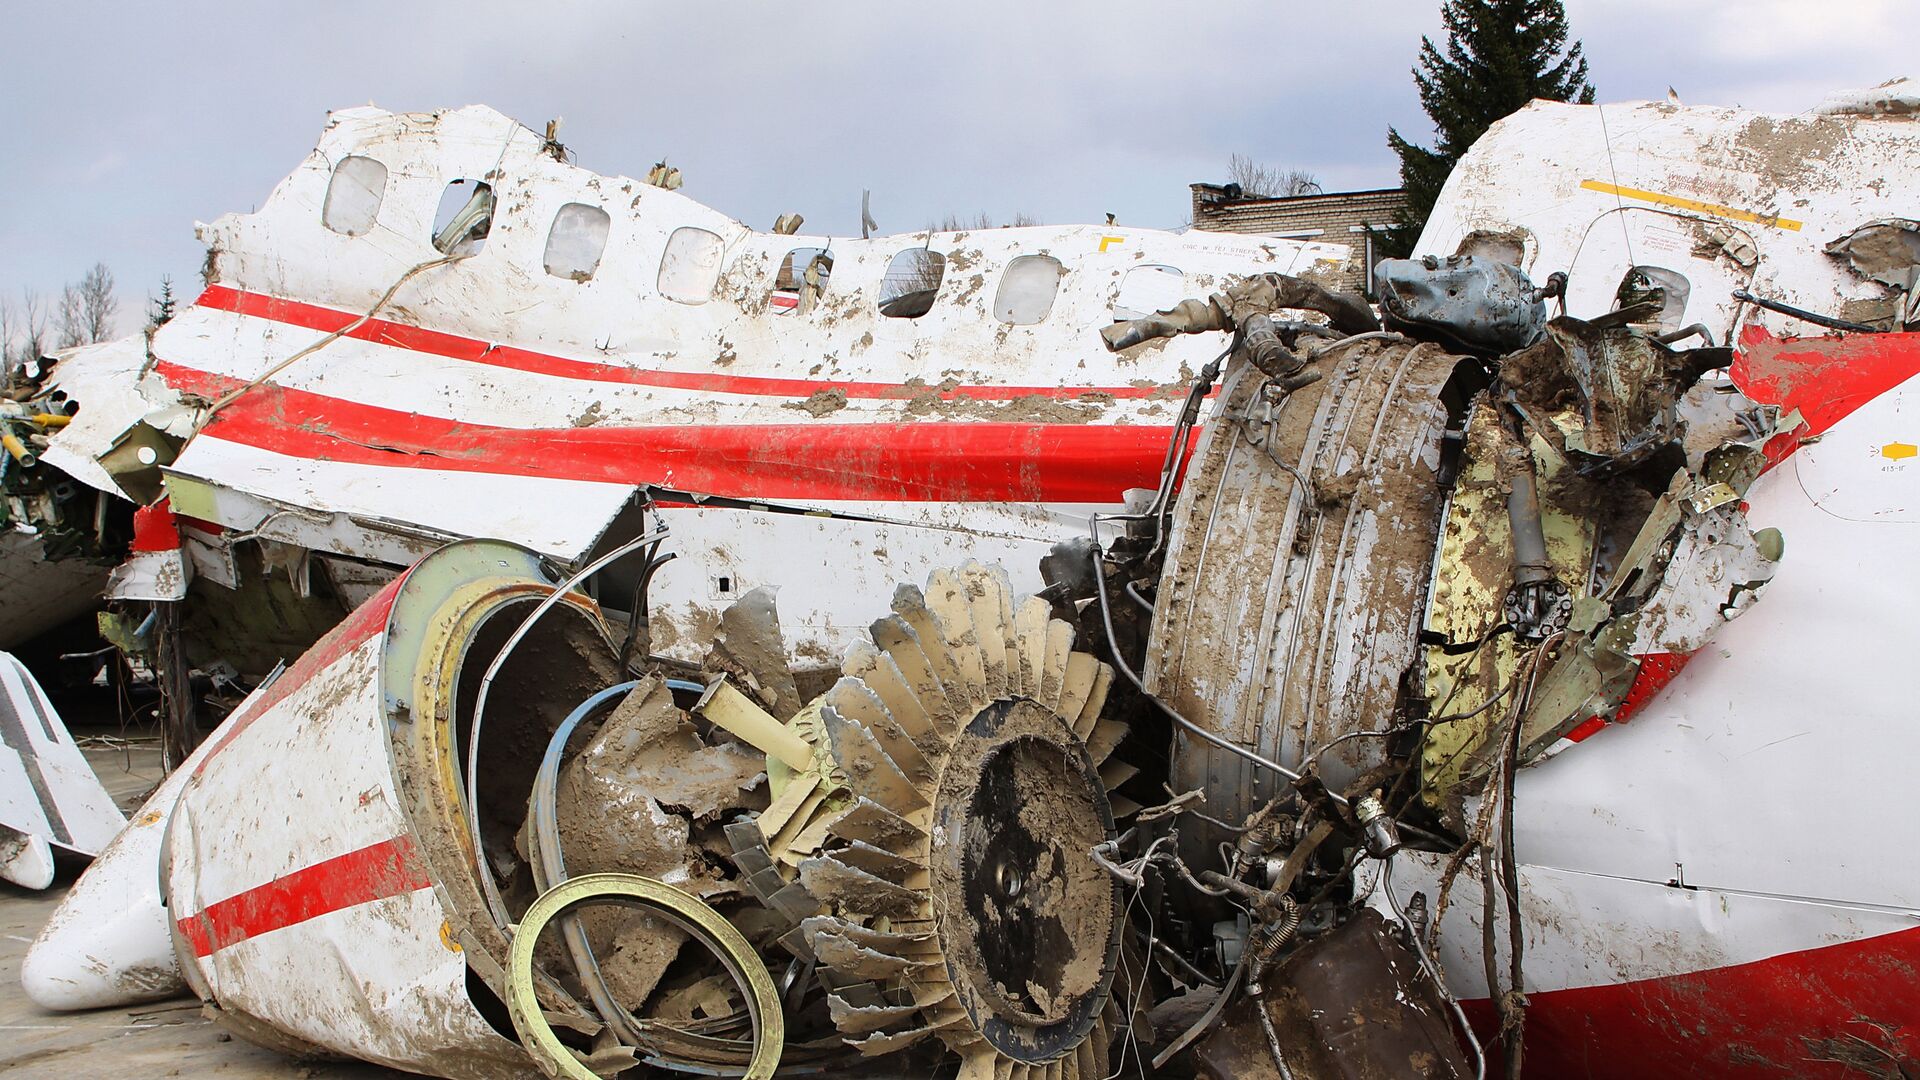 Обломки польского правительственного самолета Ту-154 на охраняемой площадке аэродрома в Смоленске - РИА Новости, 1920, 03.04.2017